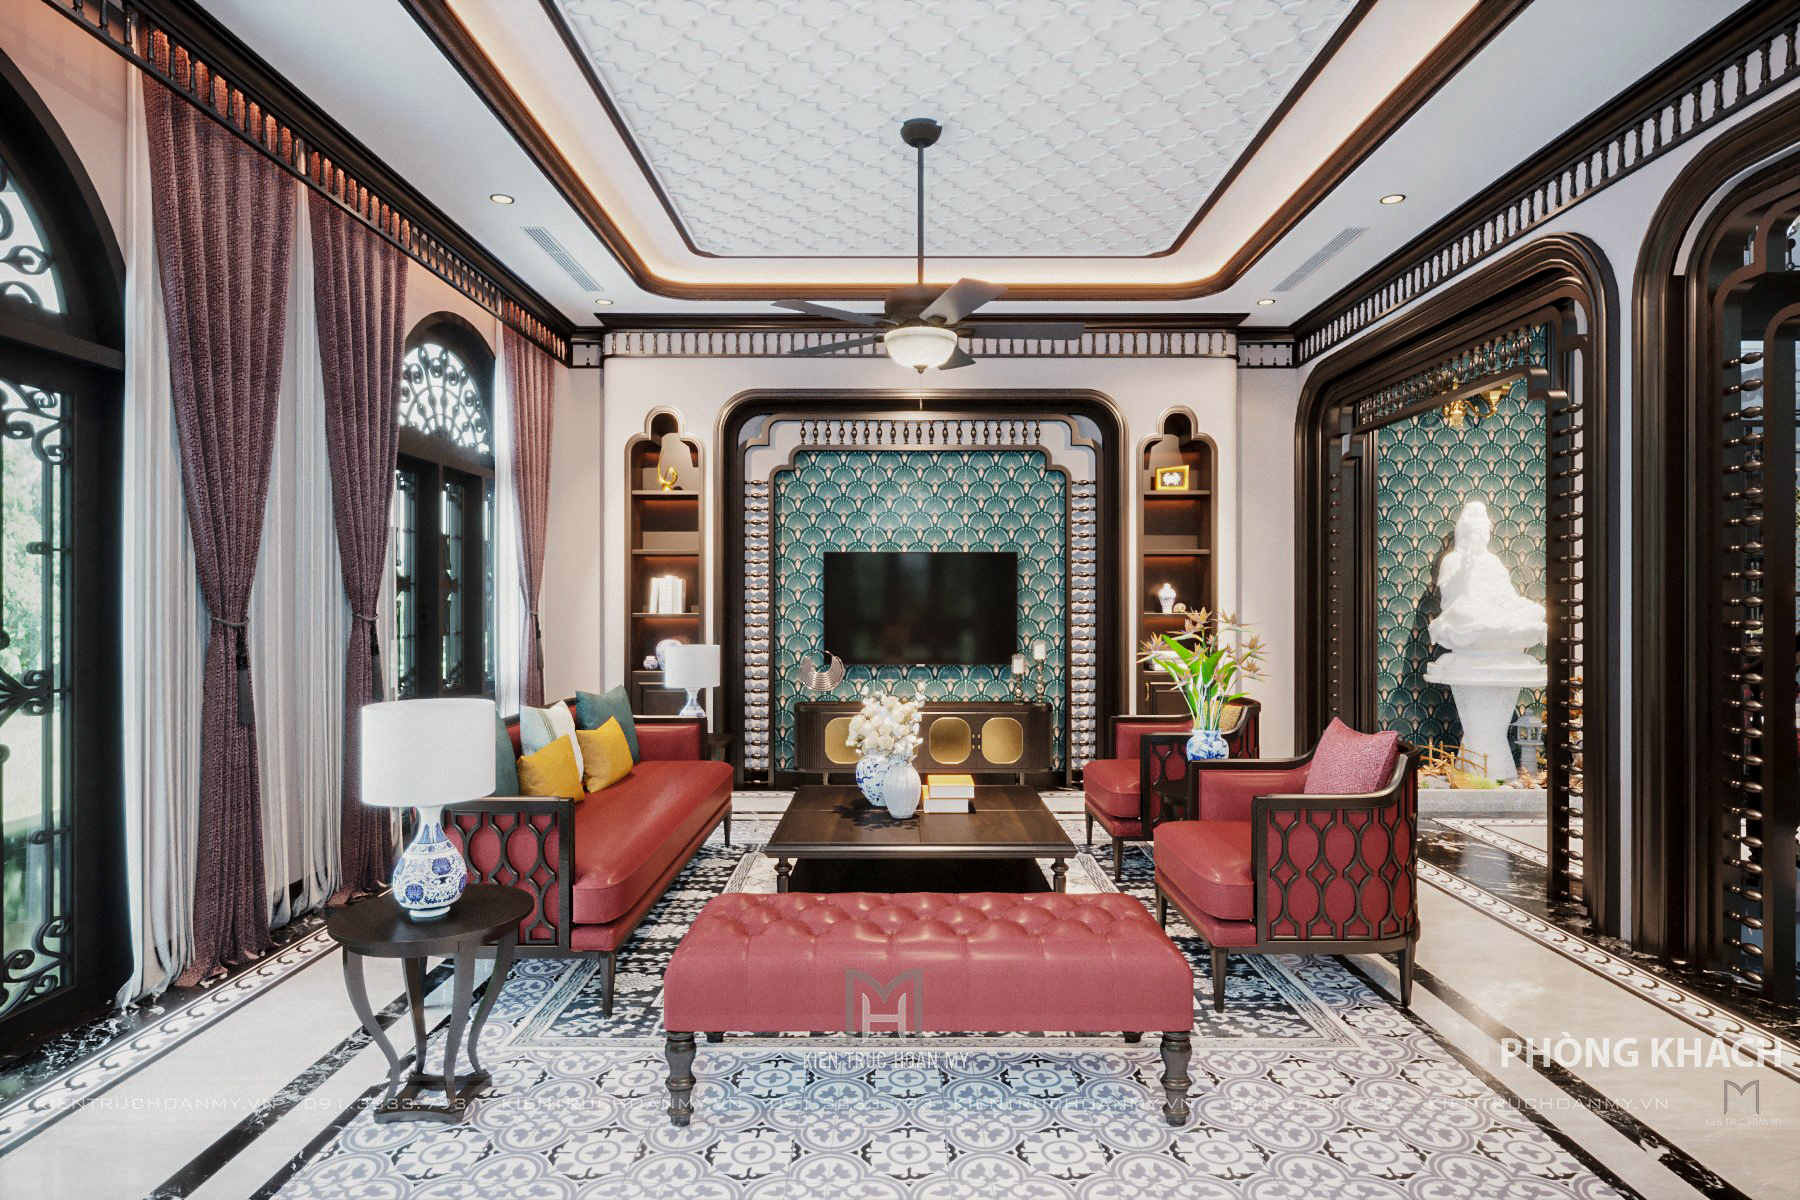 Phòng khách mang vẻ đẹp sang trọng, tinh tế của nền văn hóa Đông Dương